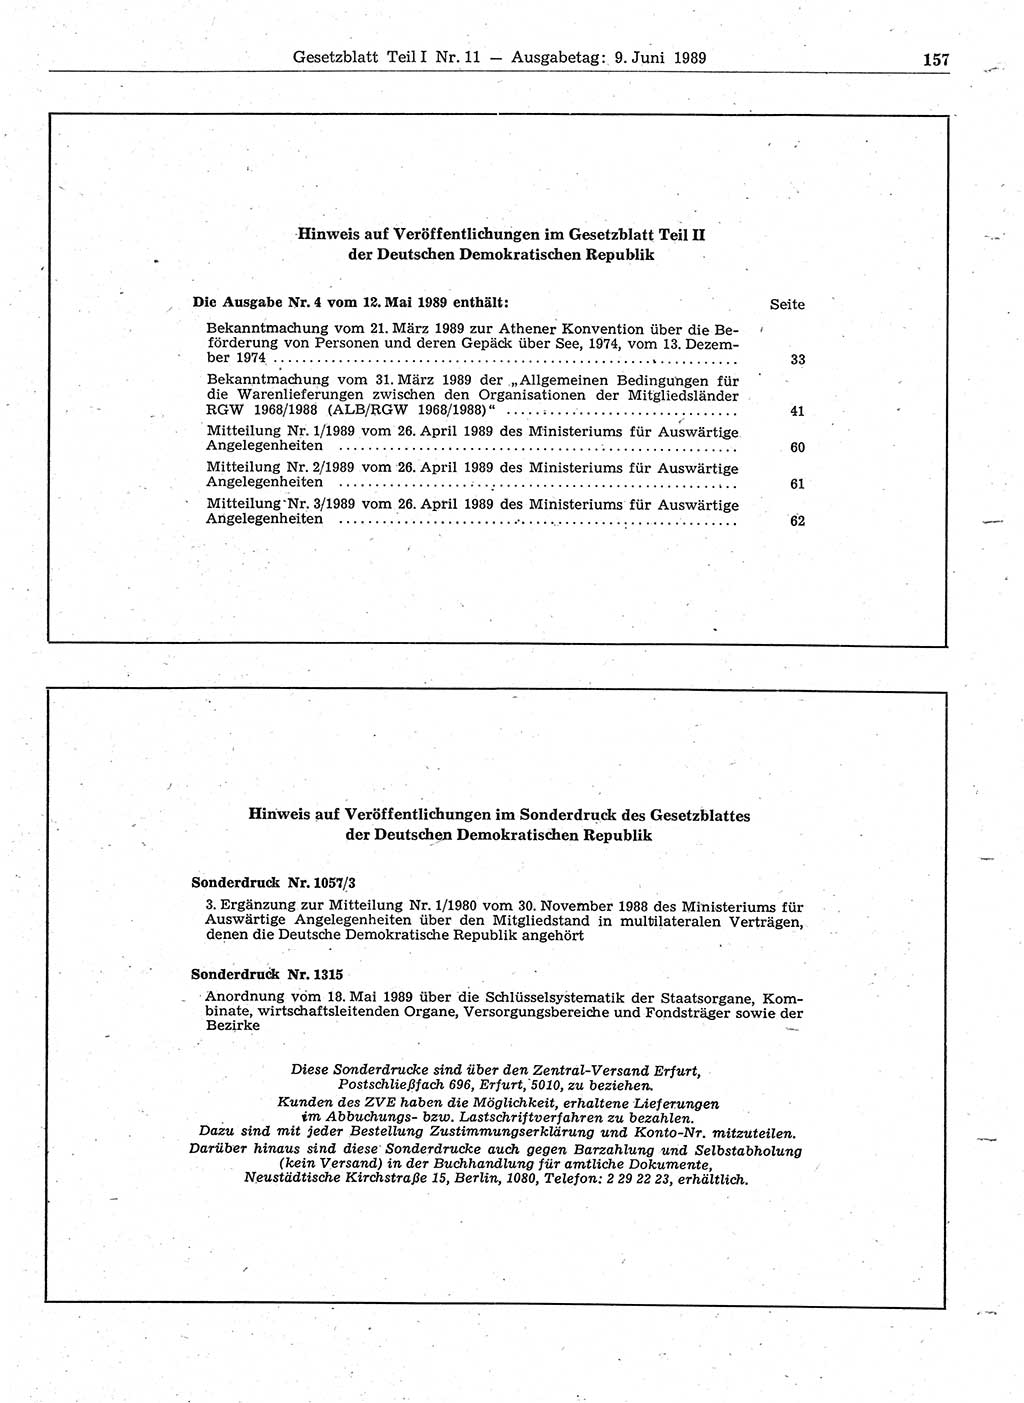 Gesetzblatt (GBl.) der Deutschen Demokratischen Republik (DDR) Teil Ⅰ 1989, Seite 157 (GBl. DDR Ⅰ 1989, S. 157)